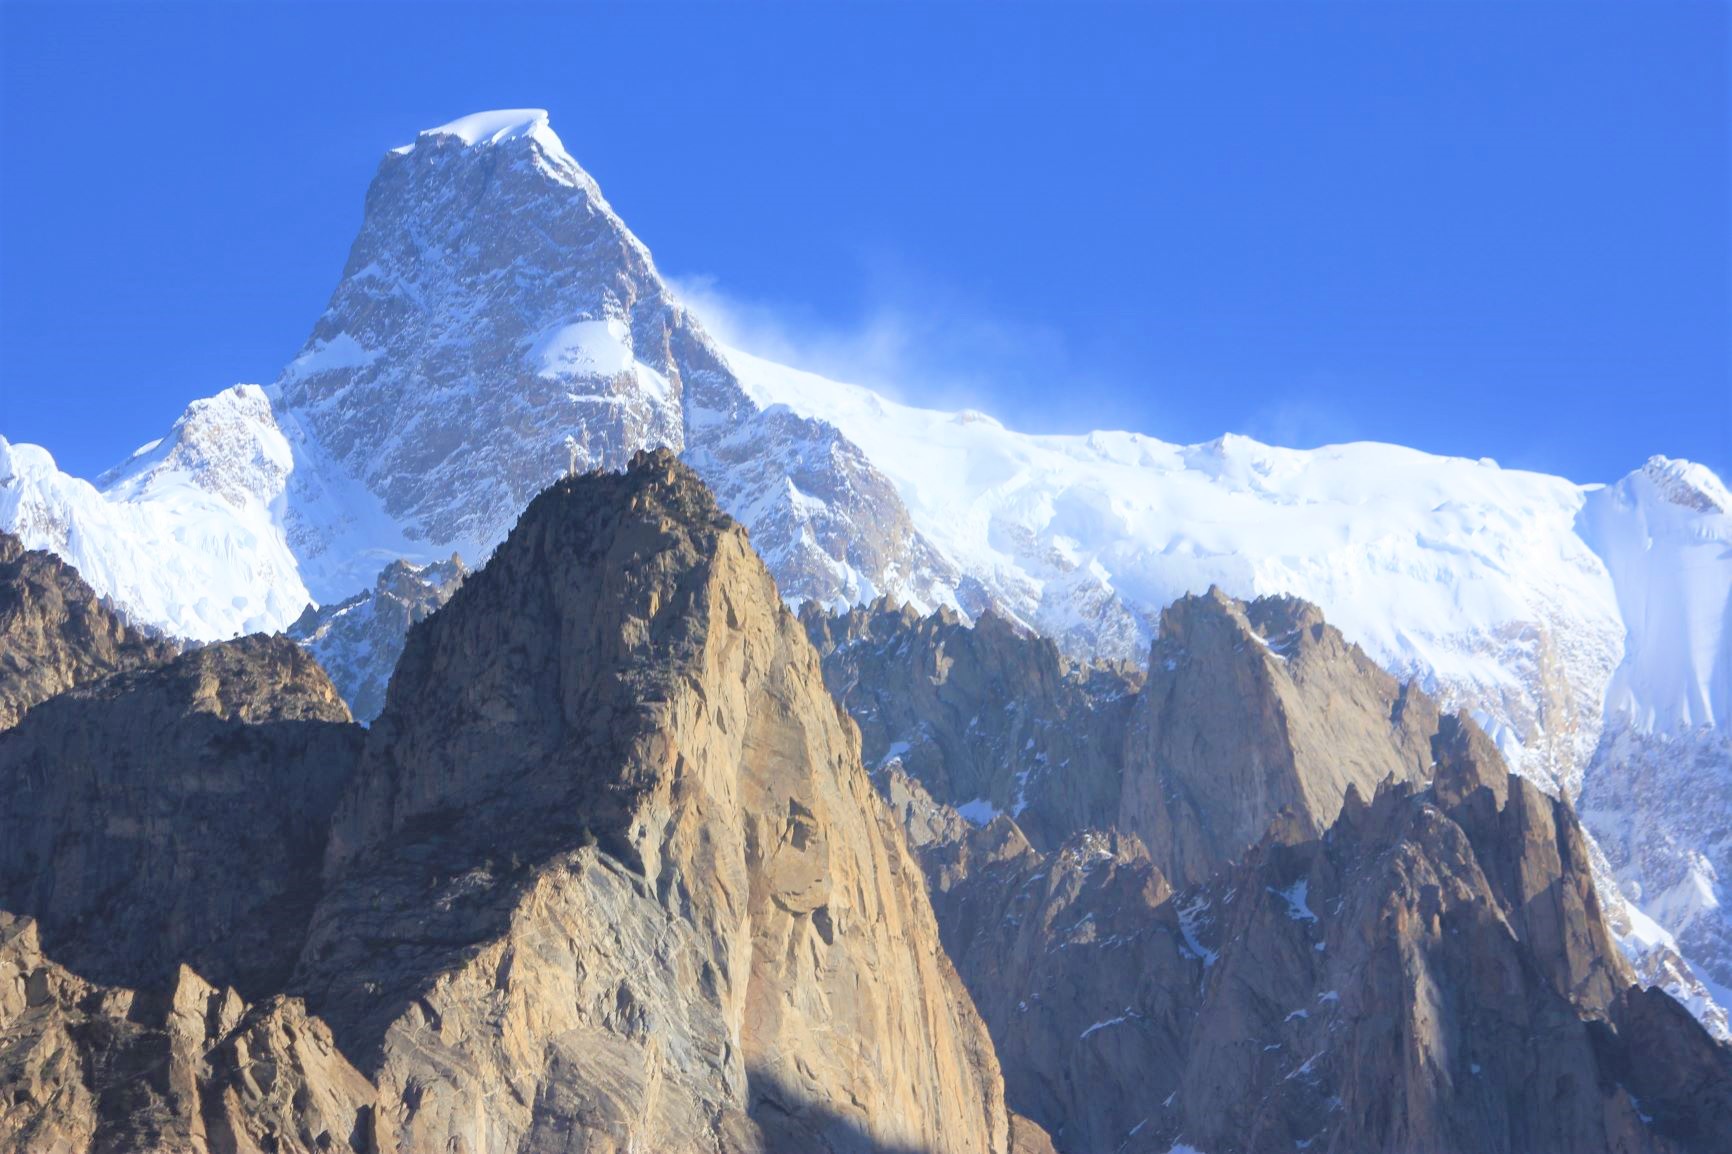 難攻不落の山として知られるウルタルⅡ峰（7,388m）